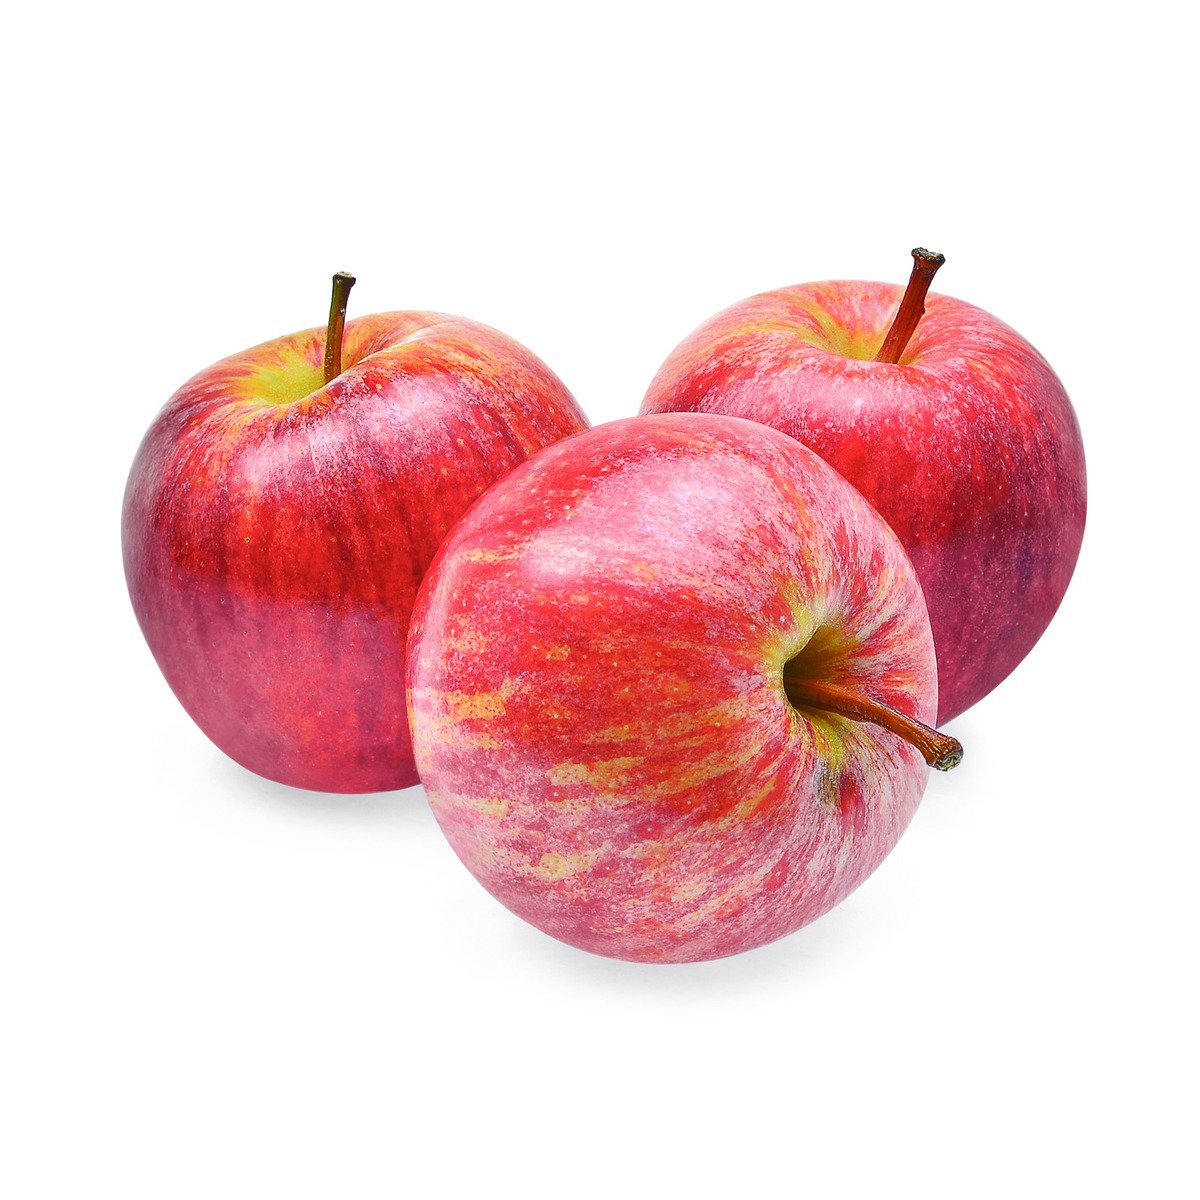 Buy Apple Royal Gala New Zealand 1 kg Online at Best Price | Apples | Lulu Kuwait in UAE